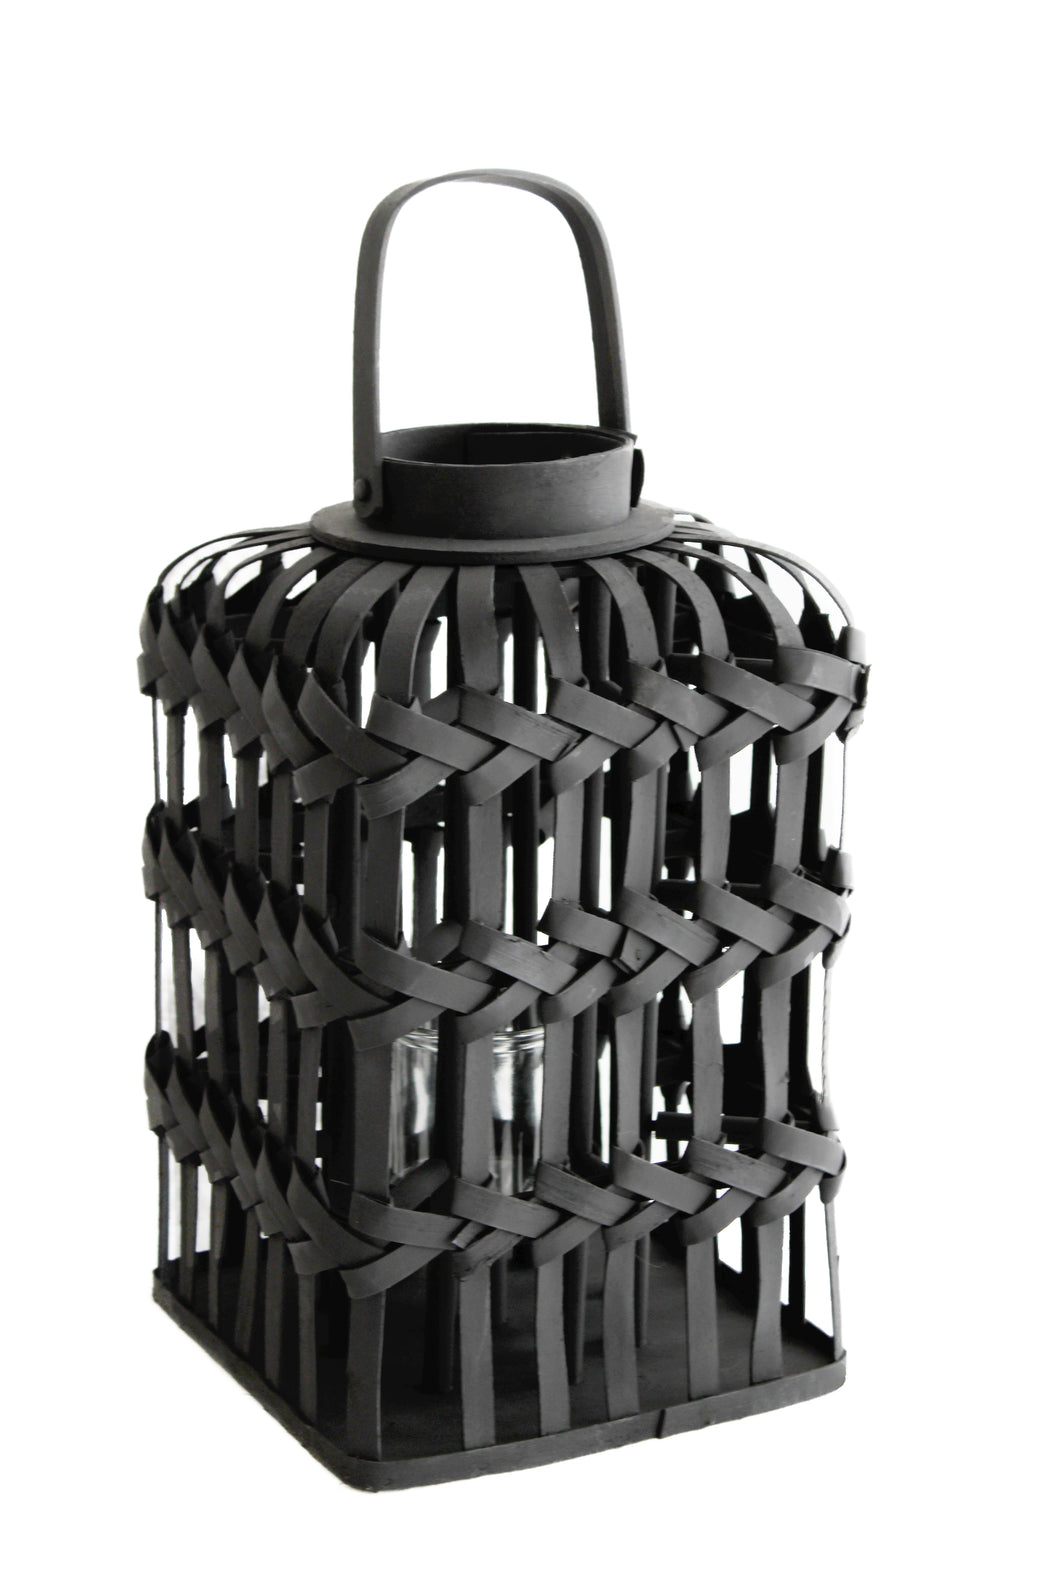 Bambus Laterne in schwarz mit Glasform, Größe 26 x 26 cm, Höhe 45 cm